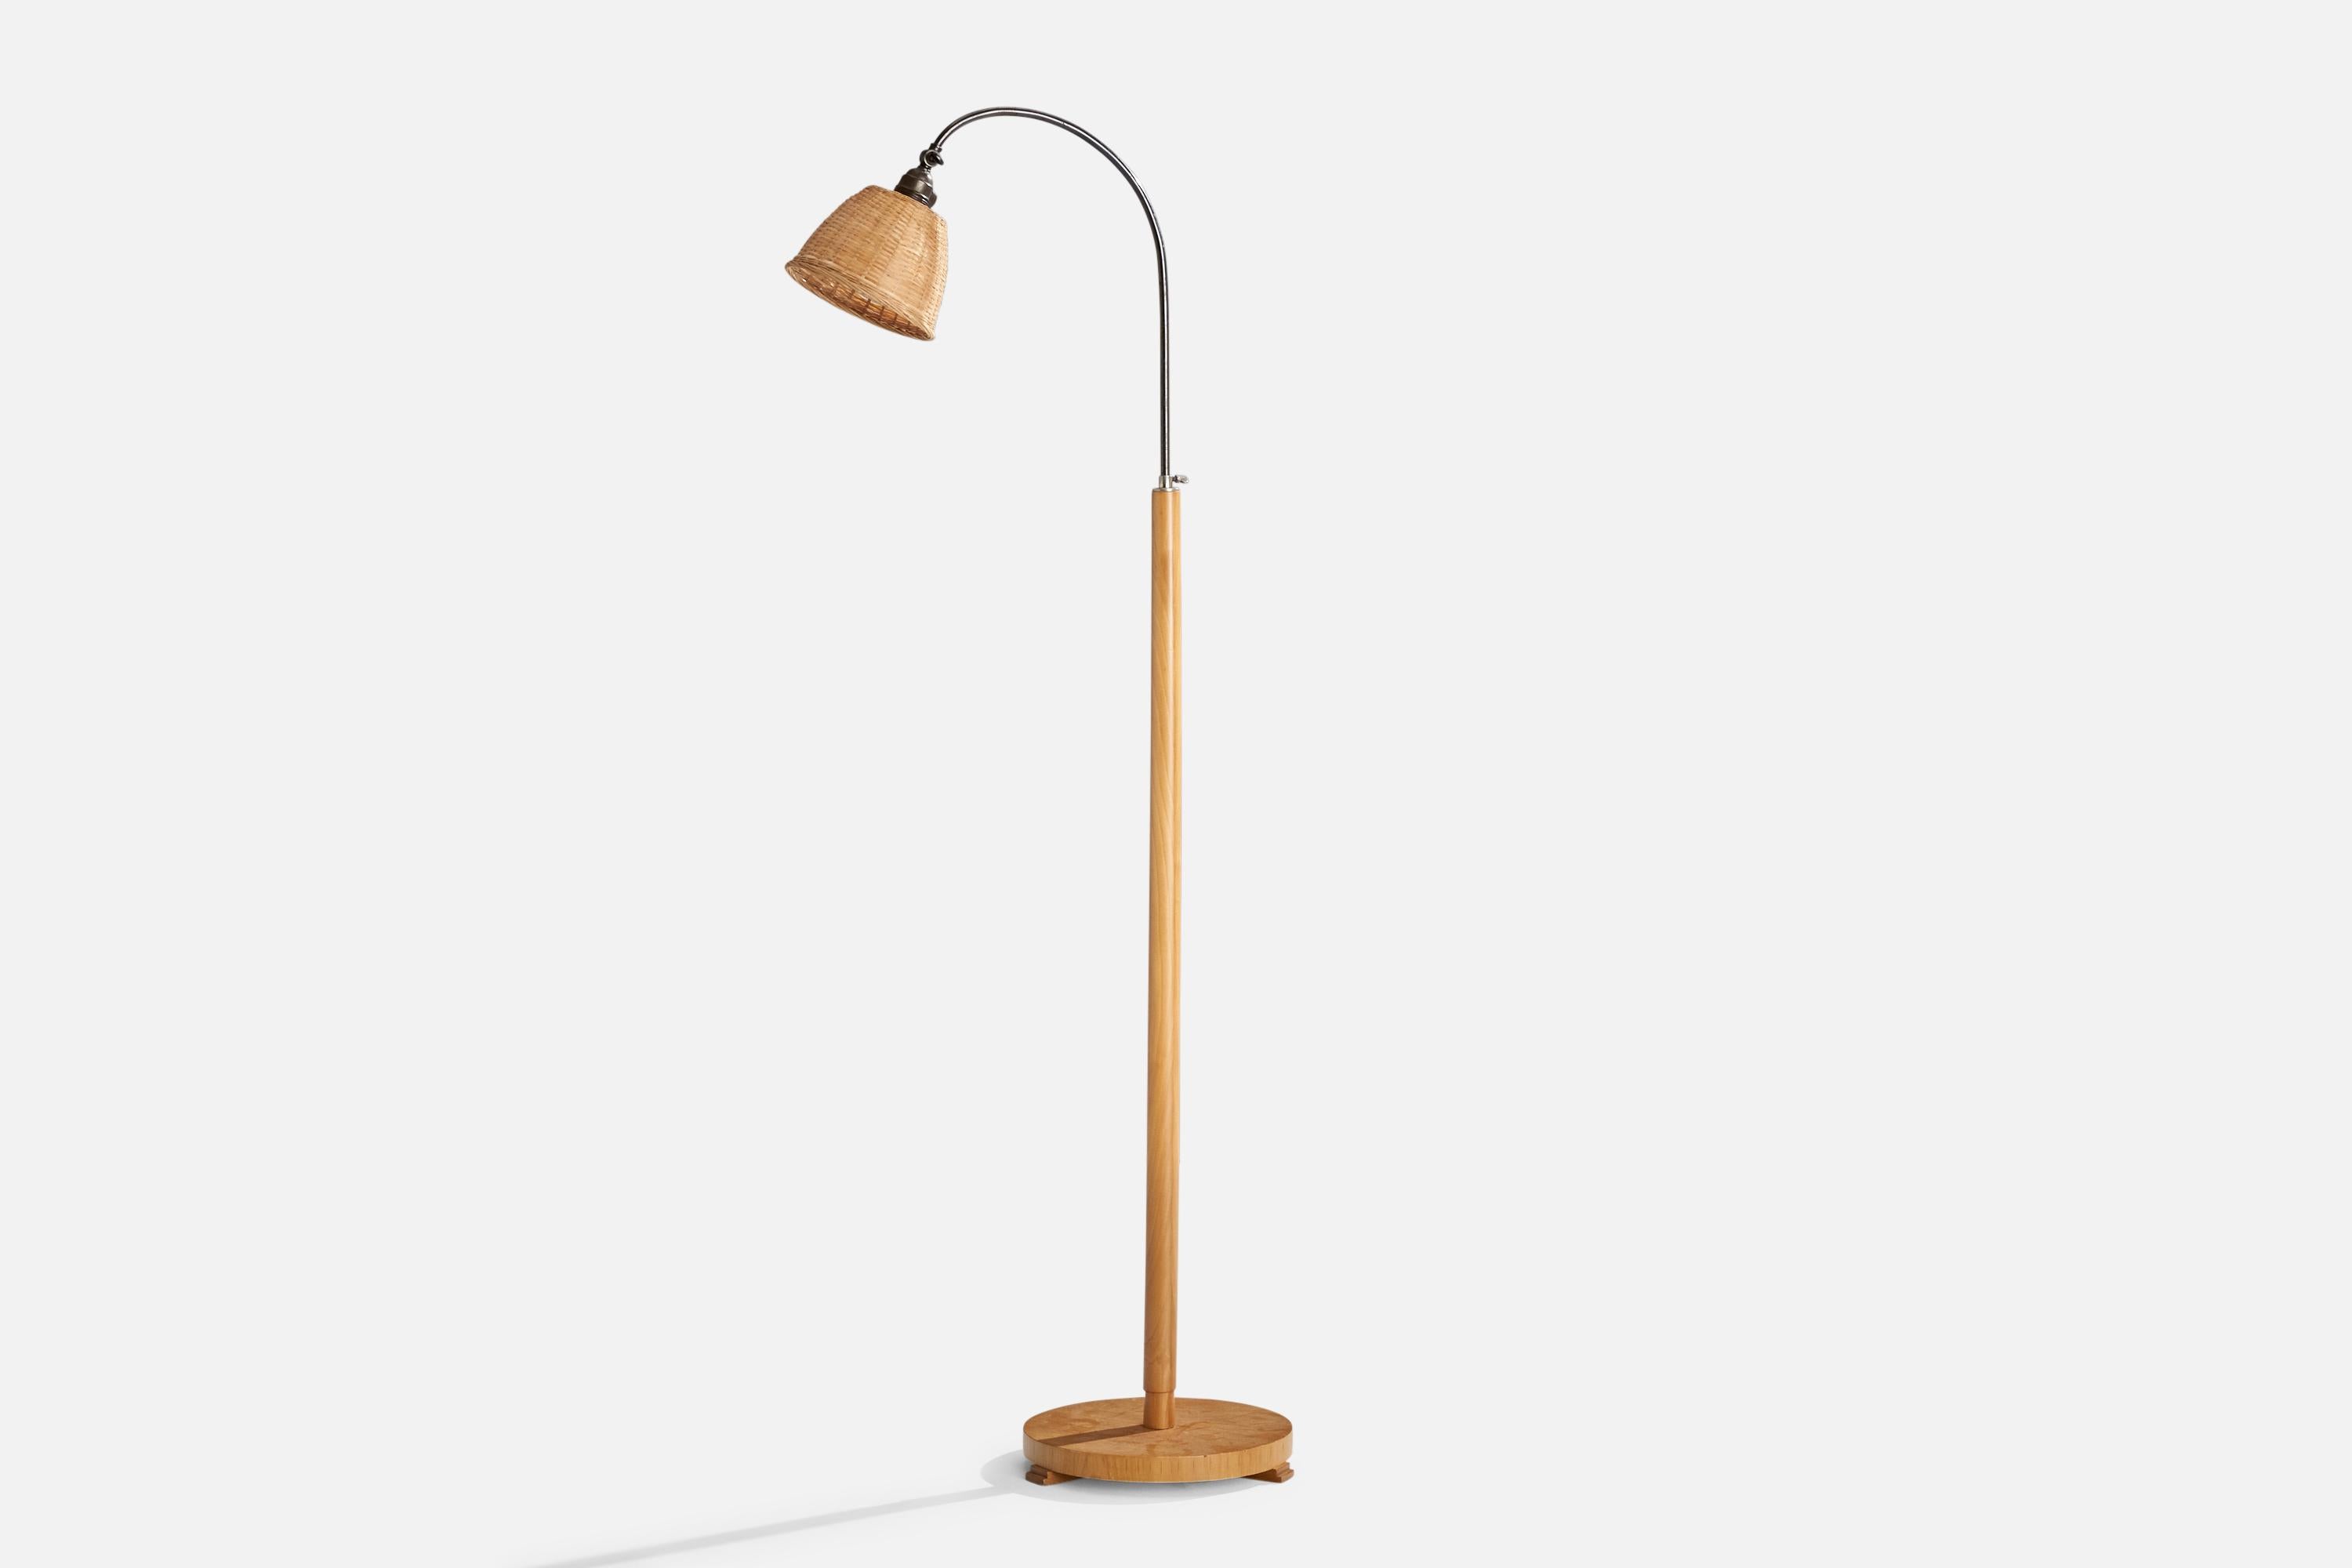 Verstellbare Stehlampe aus Birke, Metall und Rattan, entworfen und hergestellt in Schweden, ca. 1940er Jahre.

Abmessungen variabel 
Gesamtabmessungen (Zoll): 58,5